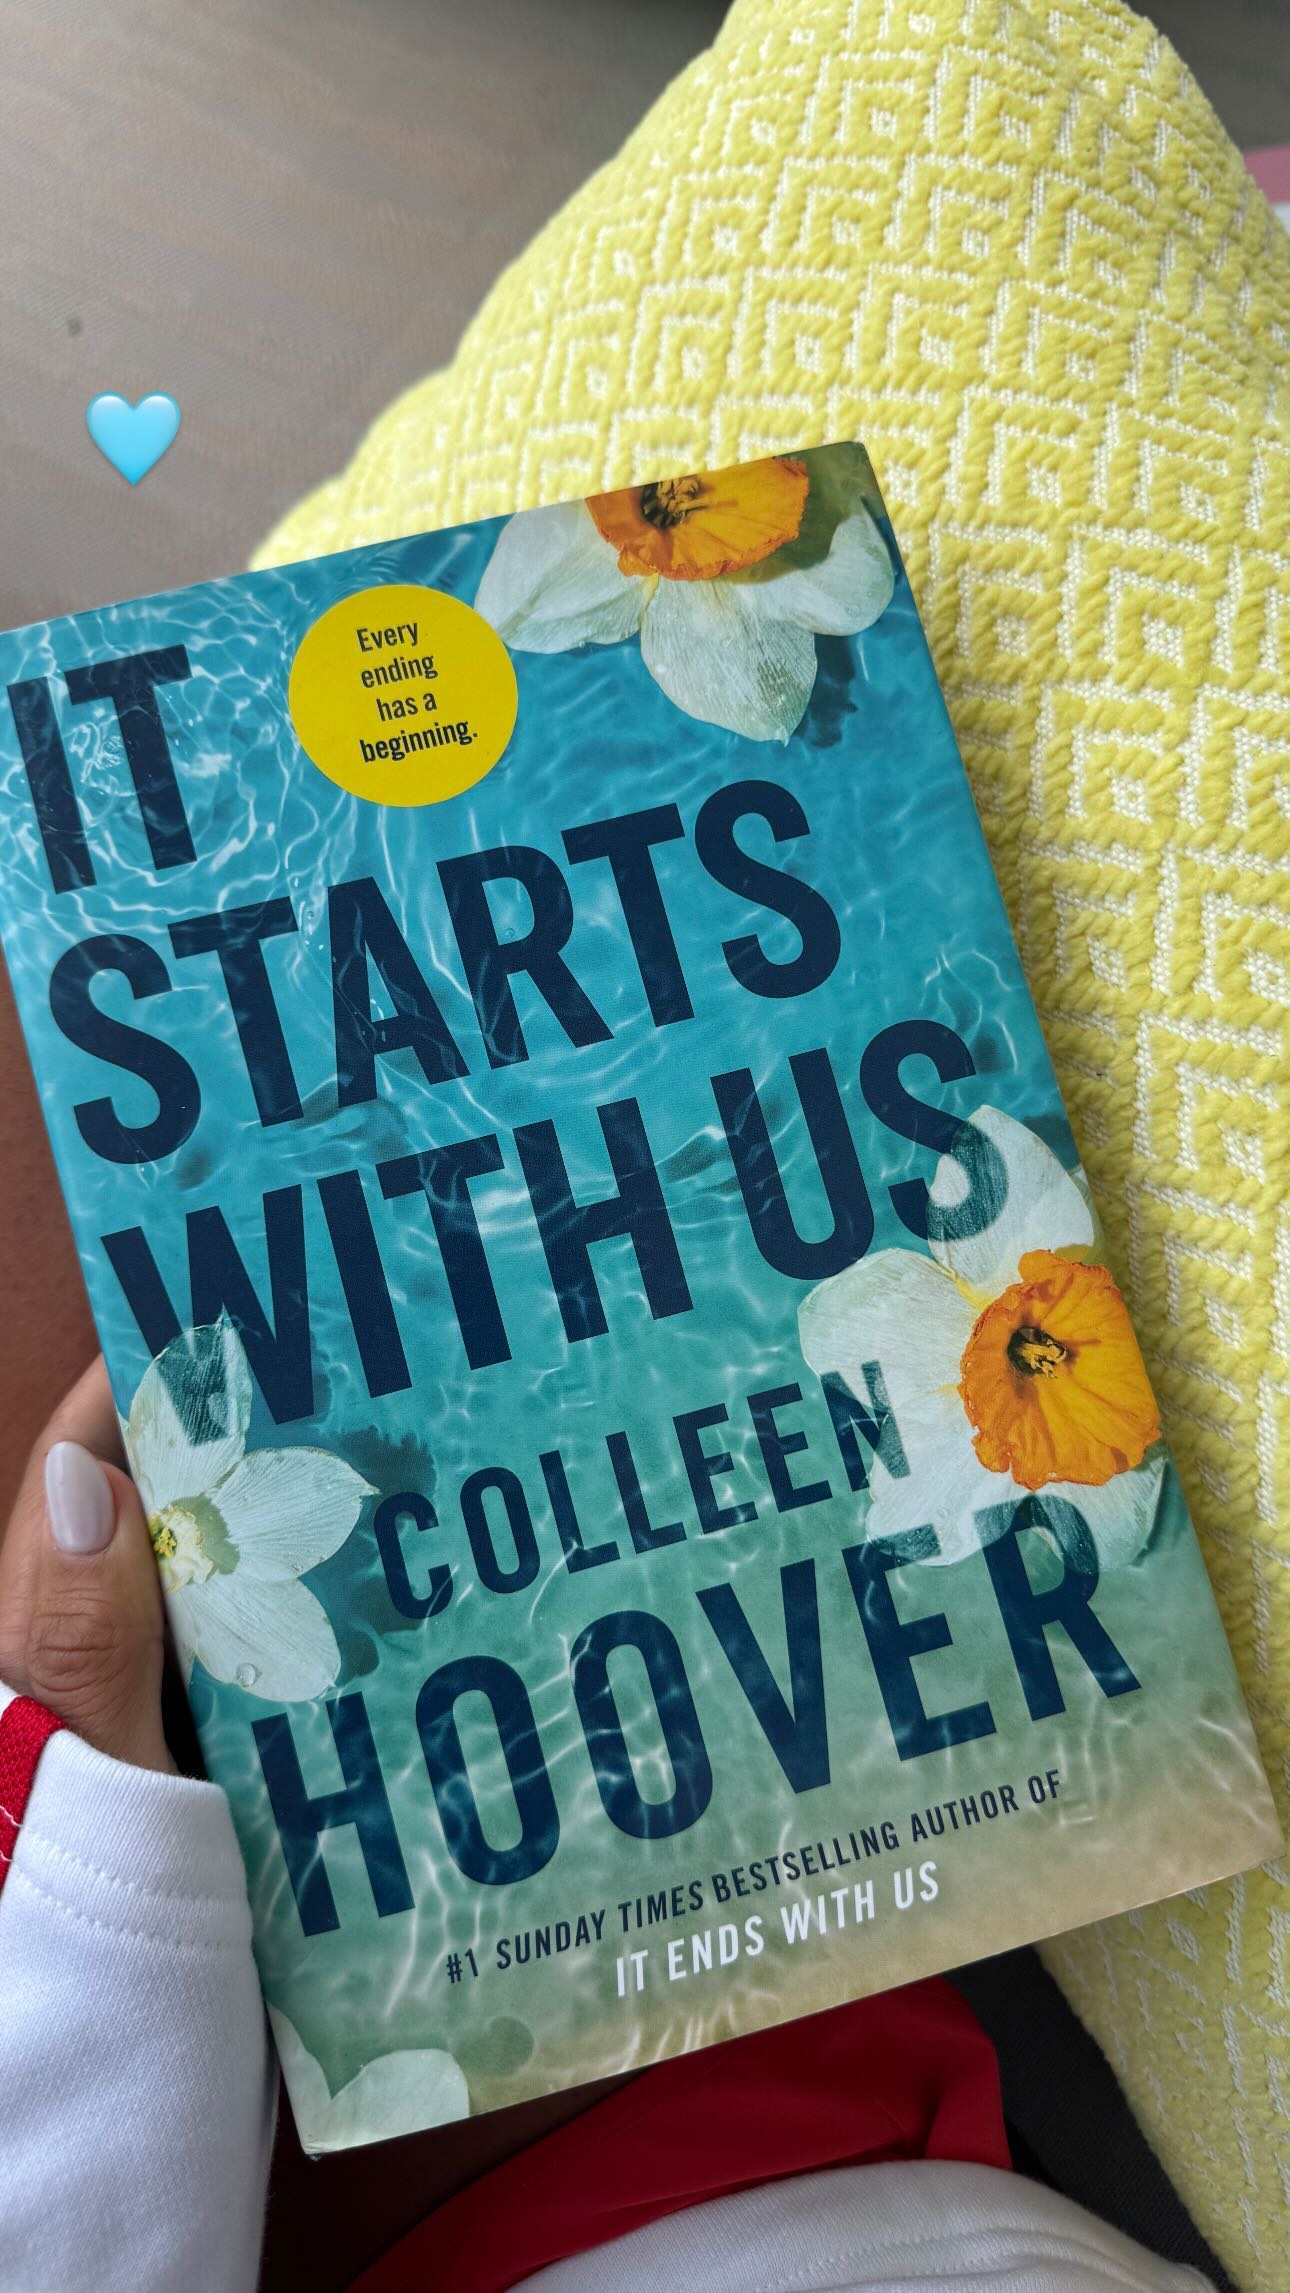 Antonela Roccuzzo publicó una foto de la portada de "Volver a empezar", la novela de Colleen Hoover.